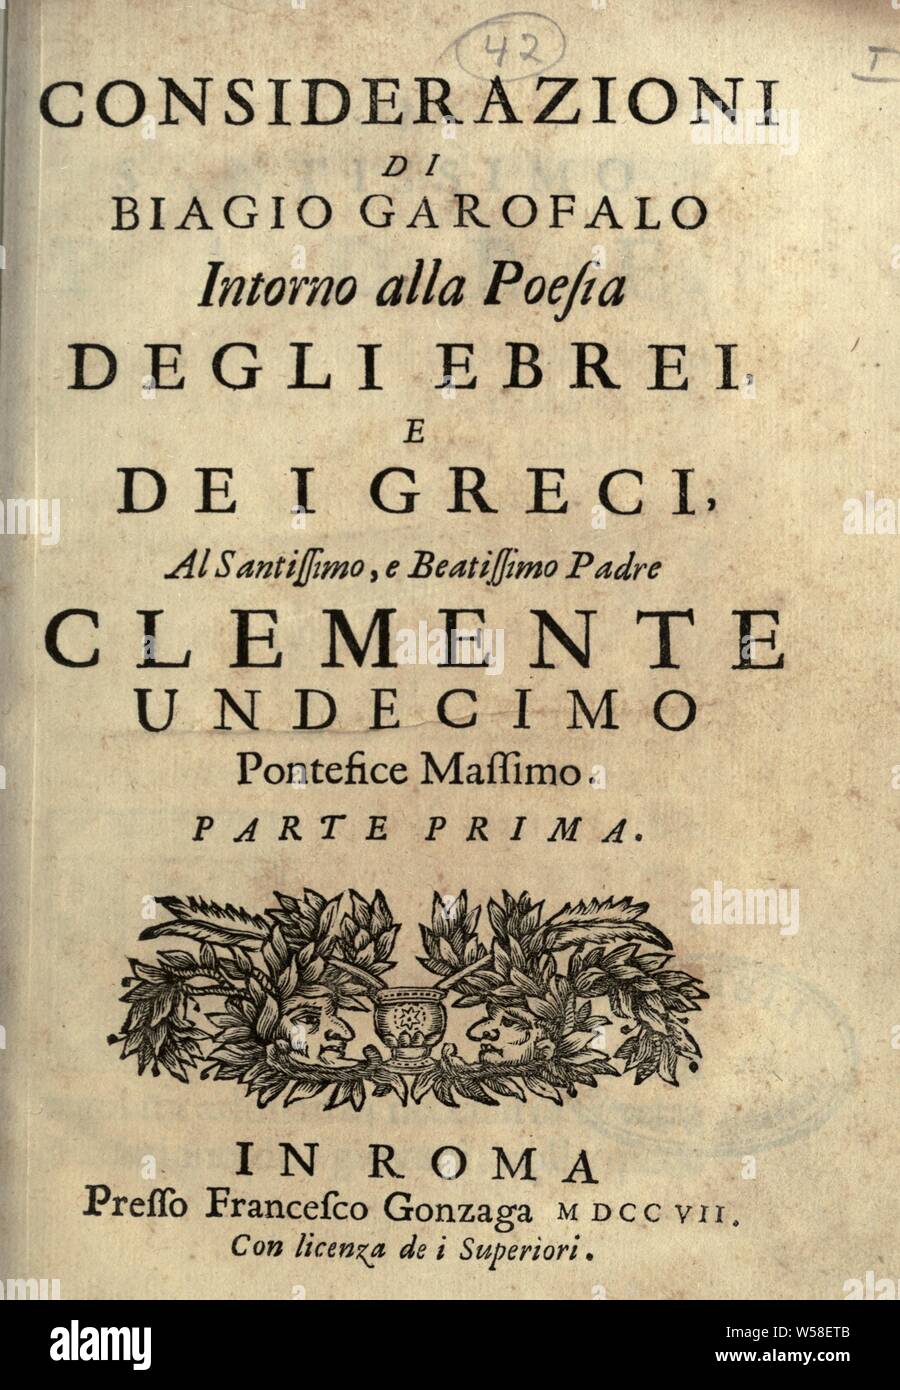 Considerazioni Intorno alla poesia degli ebrei e dei Greci : Garofalo, Biagio, 1677-1762 Banque D'Images